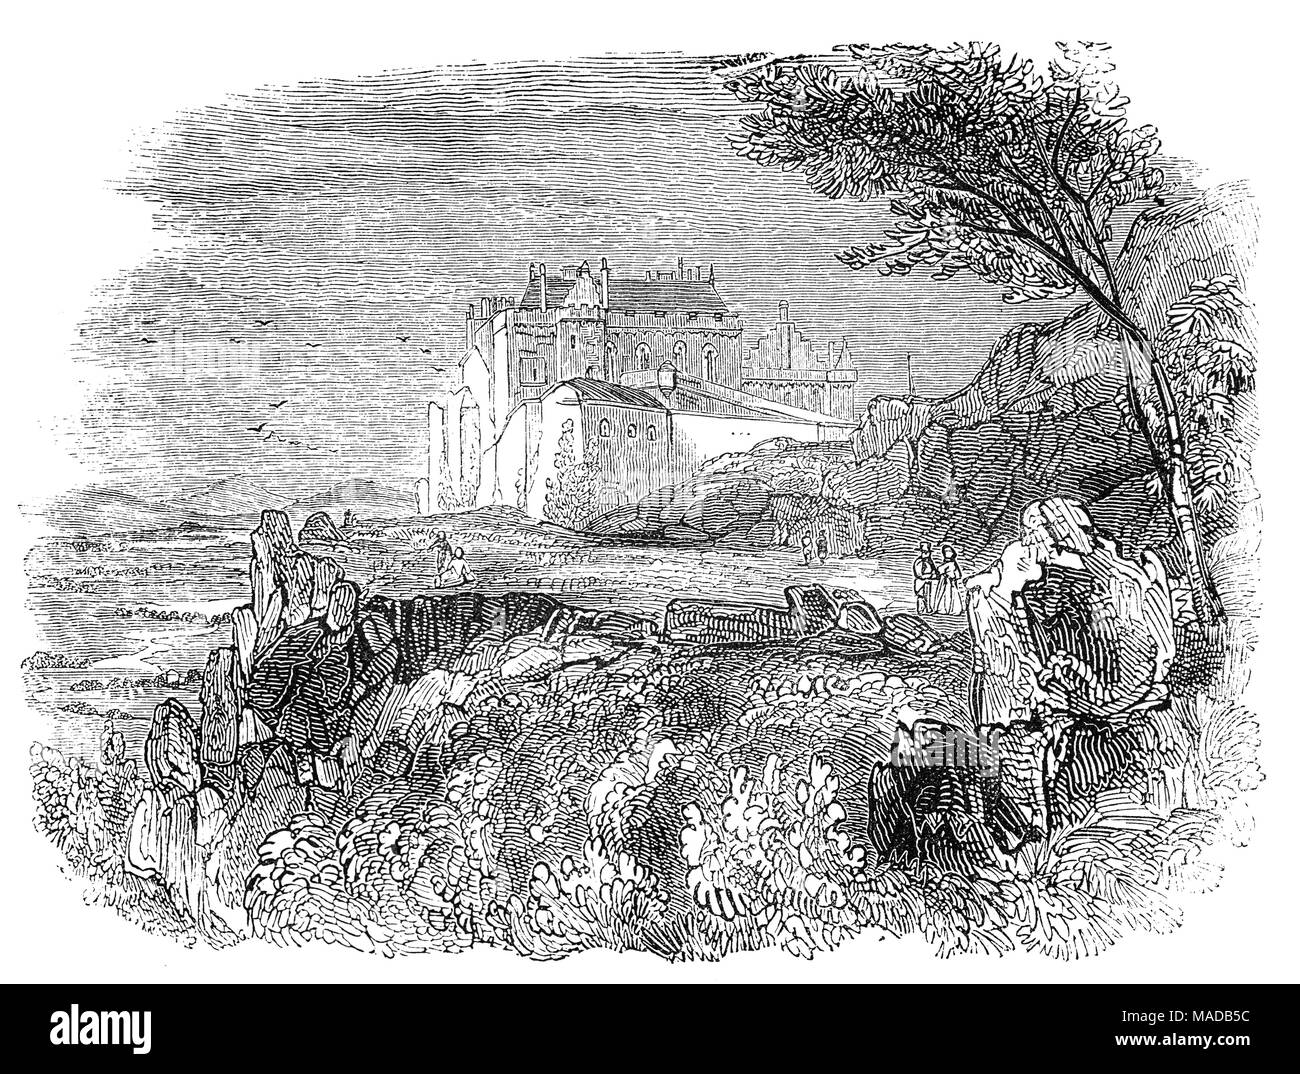 Il Castello di Stirling è uno dei più grandi e più importanti castelli in Scozia. Il castello si trova sulla cima della collina del castello ed è circondata su tre lati da ripide scogliere, dando una forte posizione difensiva. La sua posizione strategica, custodito il più a valle attraversamento del fiume Forth. Il castello risale almeno all'inizio del XII secolo, presente per la maggior parte degli edifici costruiti tra il 1490 e il 1600. Nel 1296, re Edward mi invase la Scozia, inizio delle guerre di indipendenza scozzese, che è durato per i prossimi 60 anni. Durante questo periodo di tempo il castello ha ospitato a William Wallace dopo la battaglia di Stirl Foto Stock